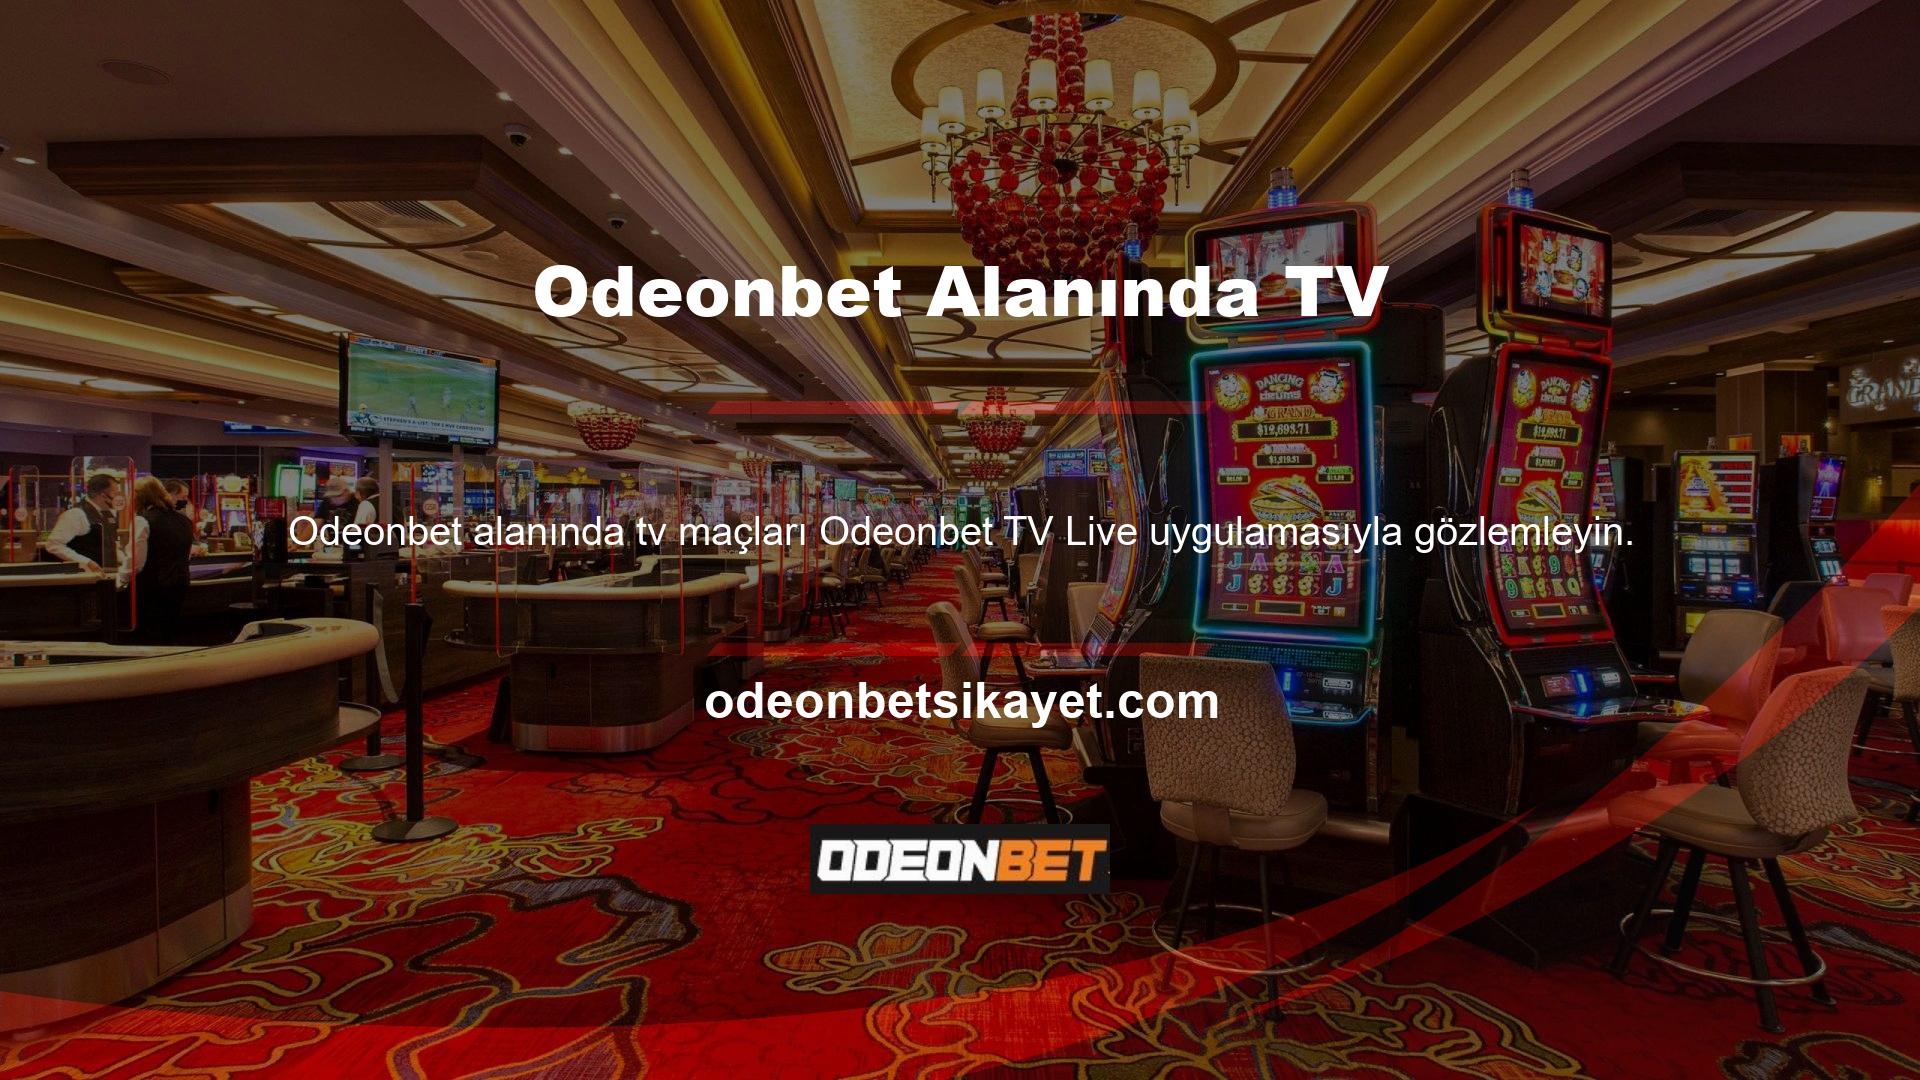 Odeonbet TV Live uygulaması tüm şirket oyunlarına ücretsiz erişim sağlar